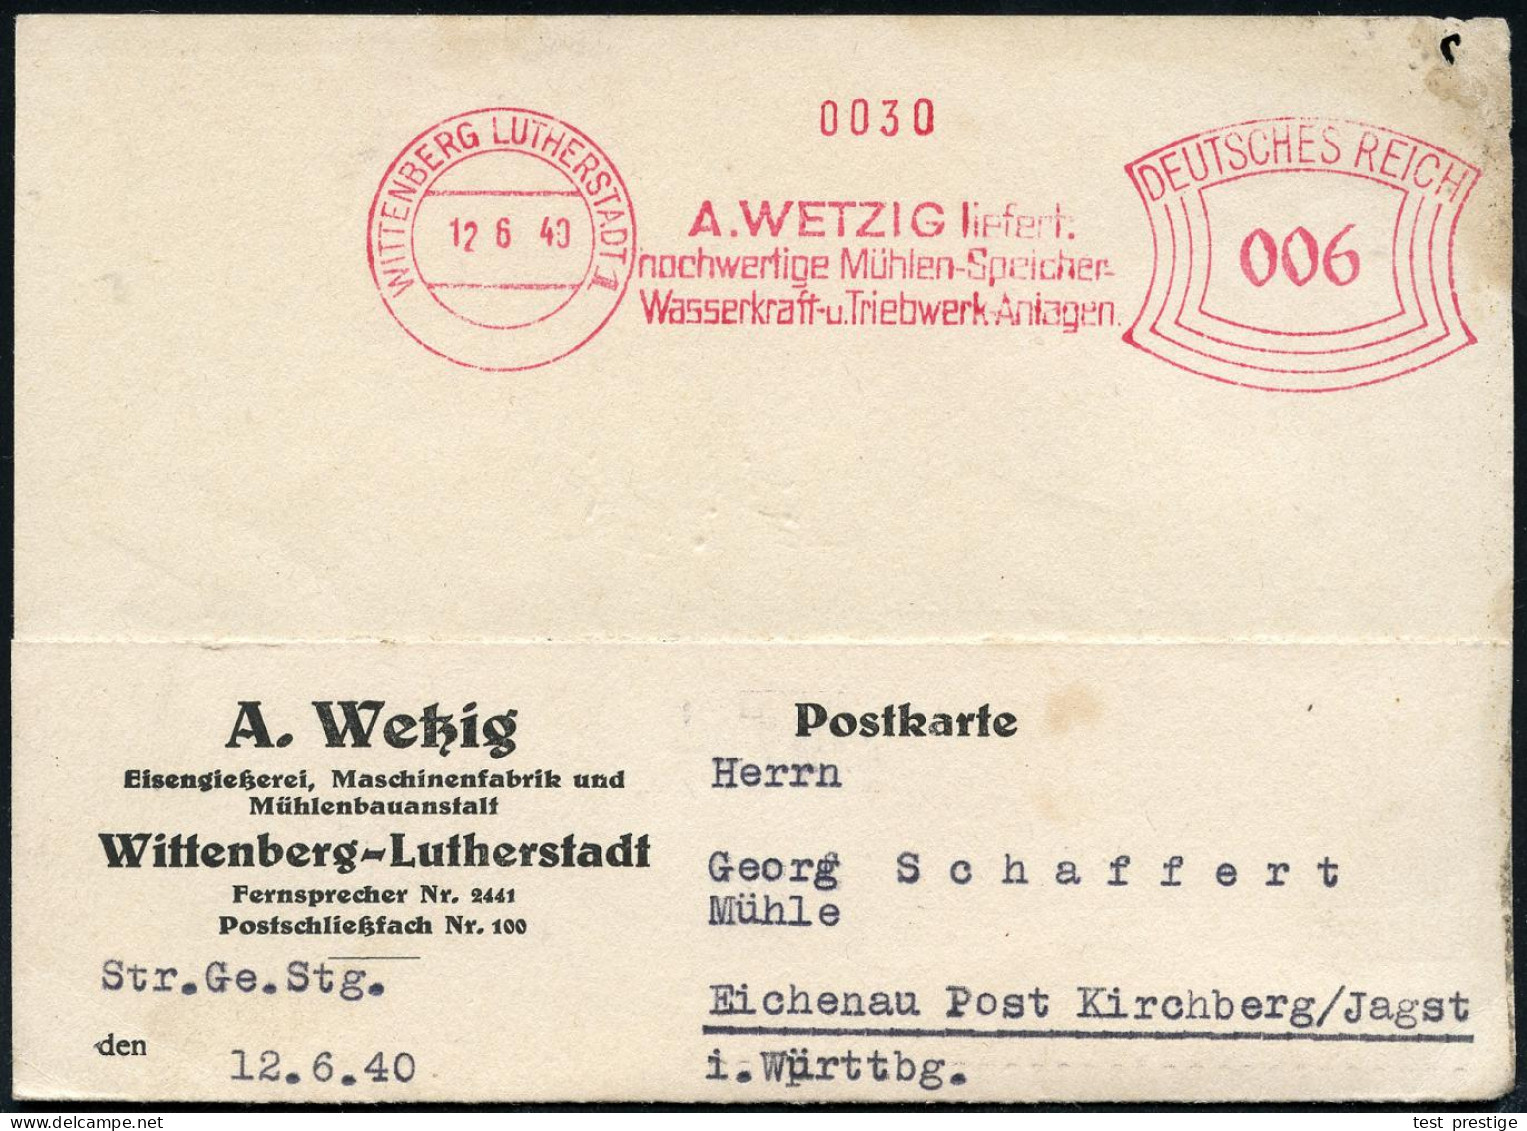 WITTENBERG  L U T H E R S T A D T / A.WETZIG Liefert/ ..Mühlen-Speicher/ Wasserkraft-u.Triebwerk-Anlagen 1940 (12.6.) Se - Christentum